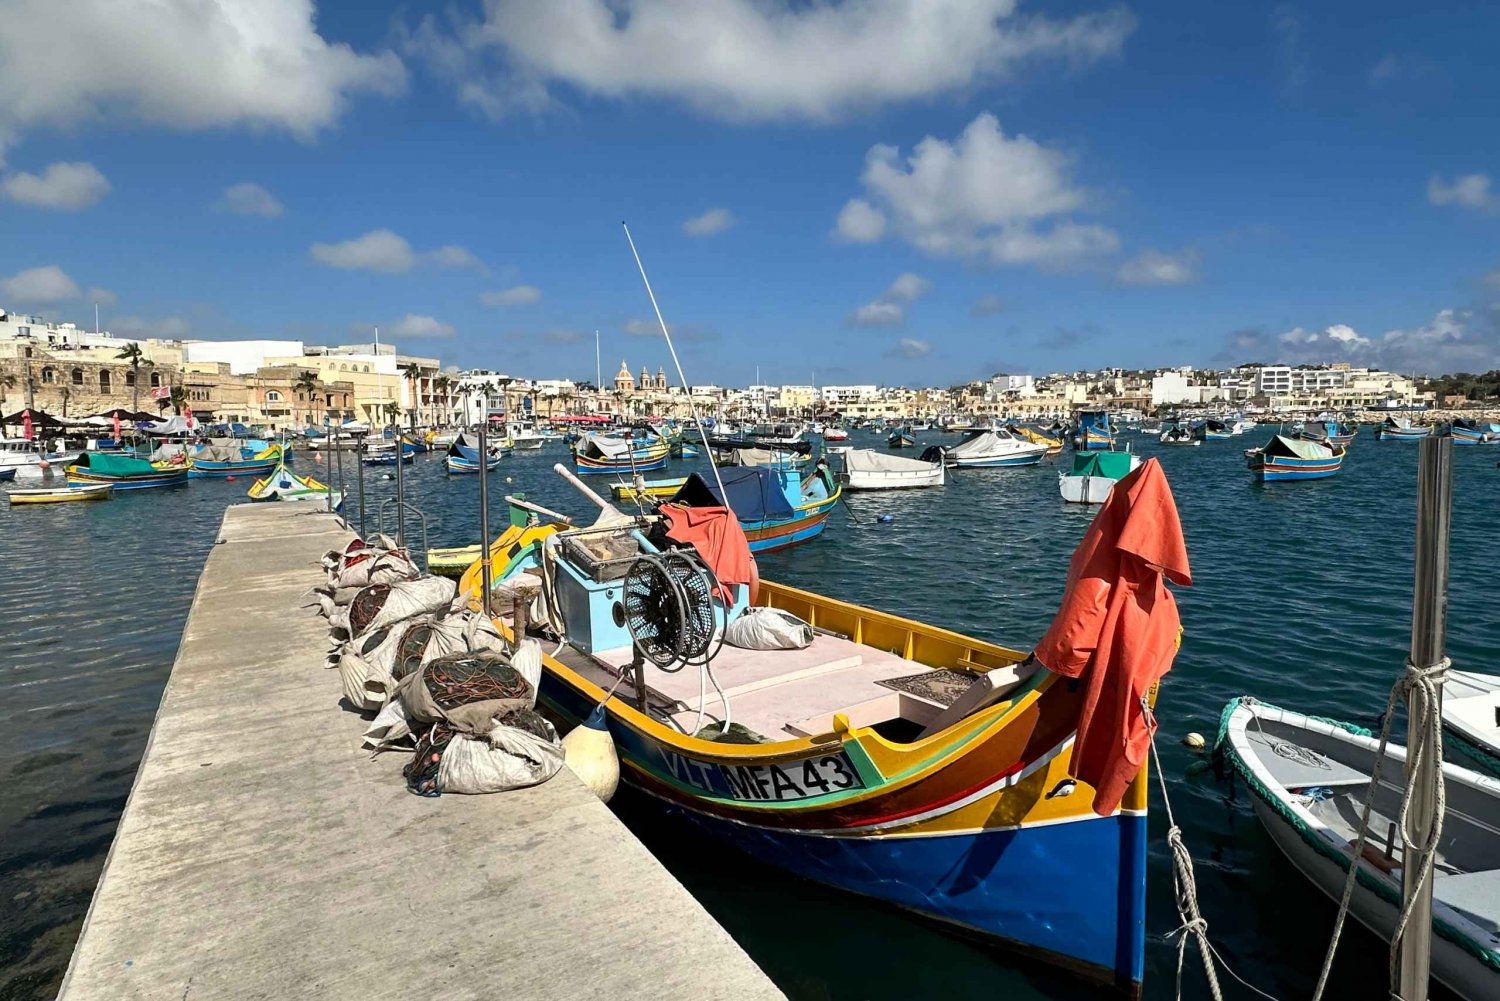 Maltas höjdpunkter: Forntida underverk, städer och kustens charm